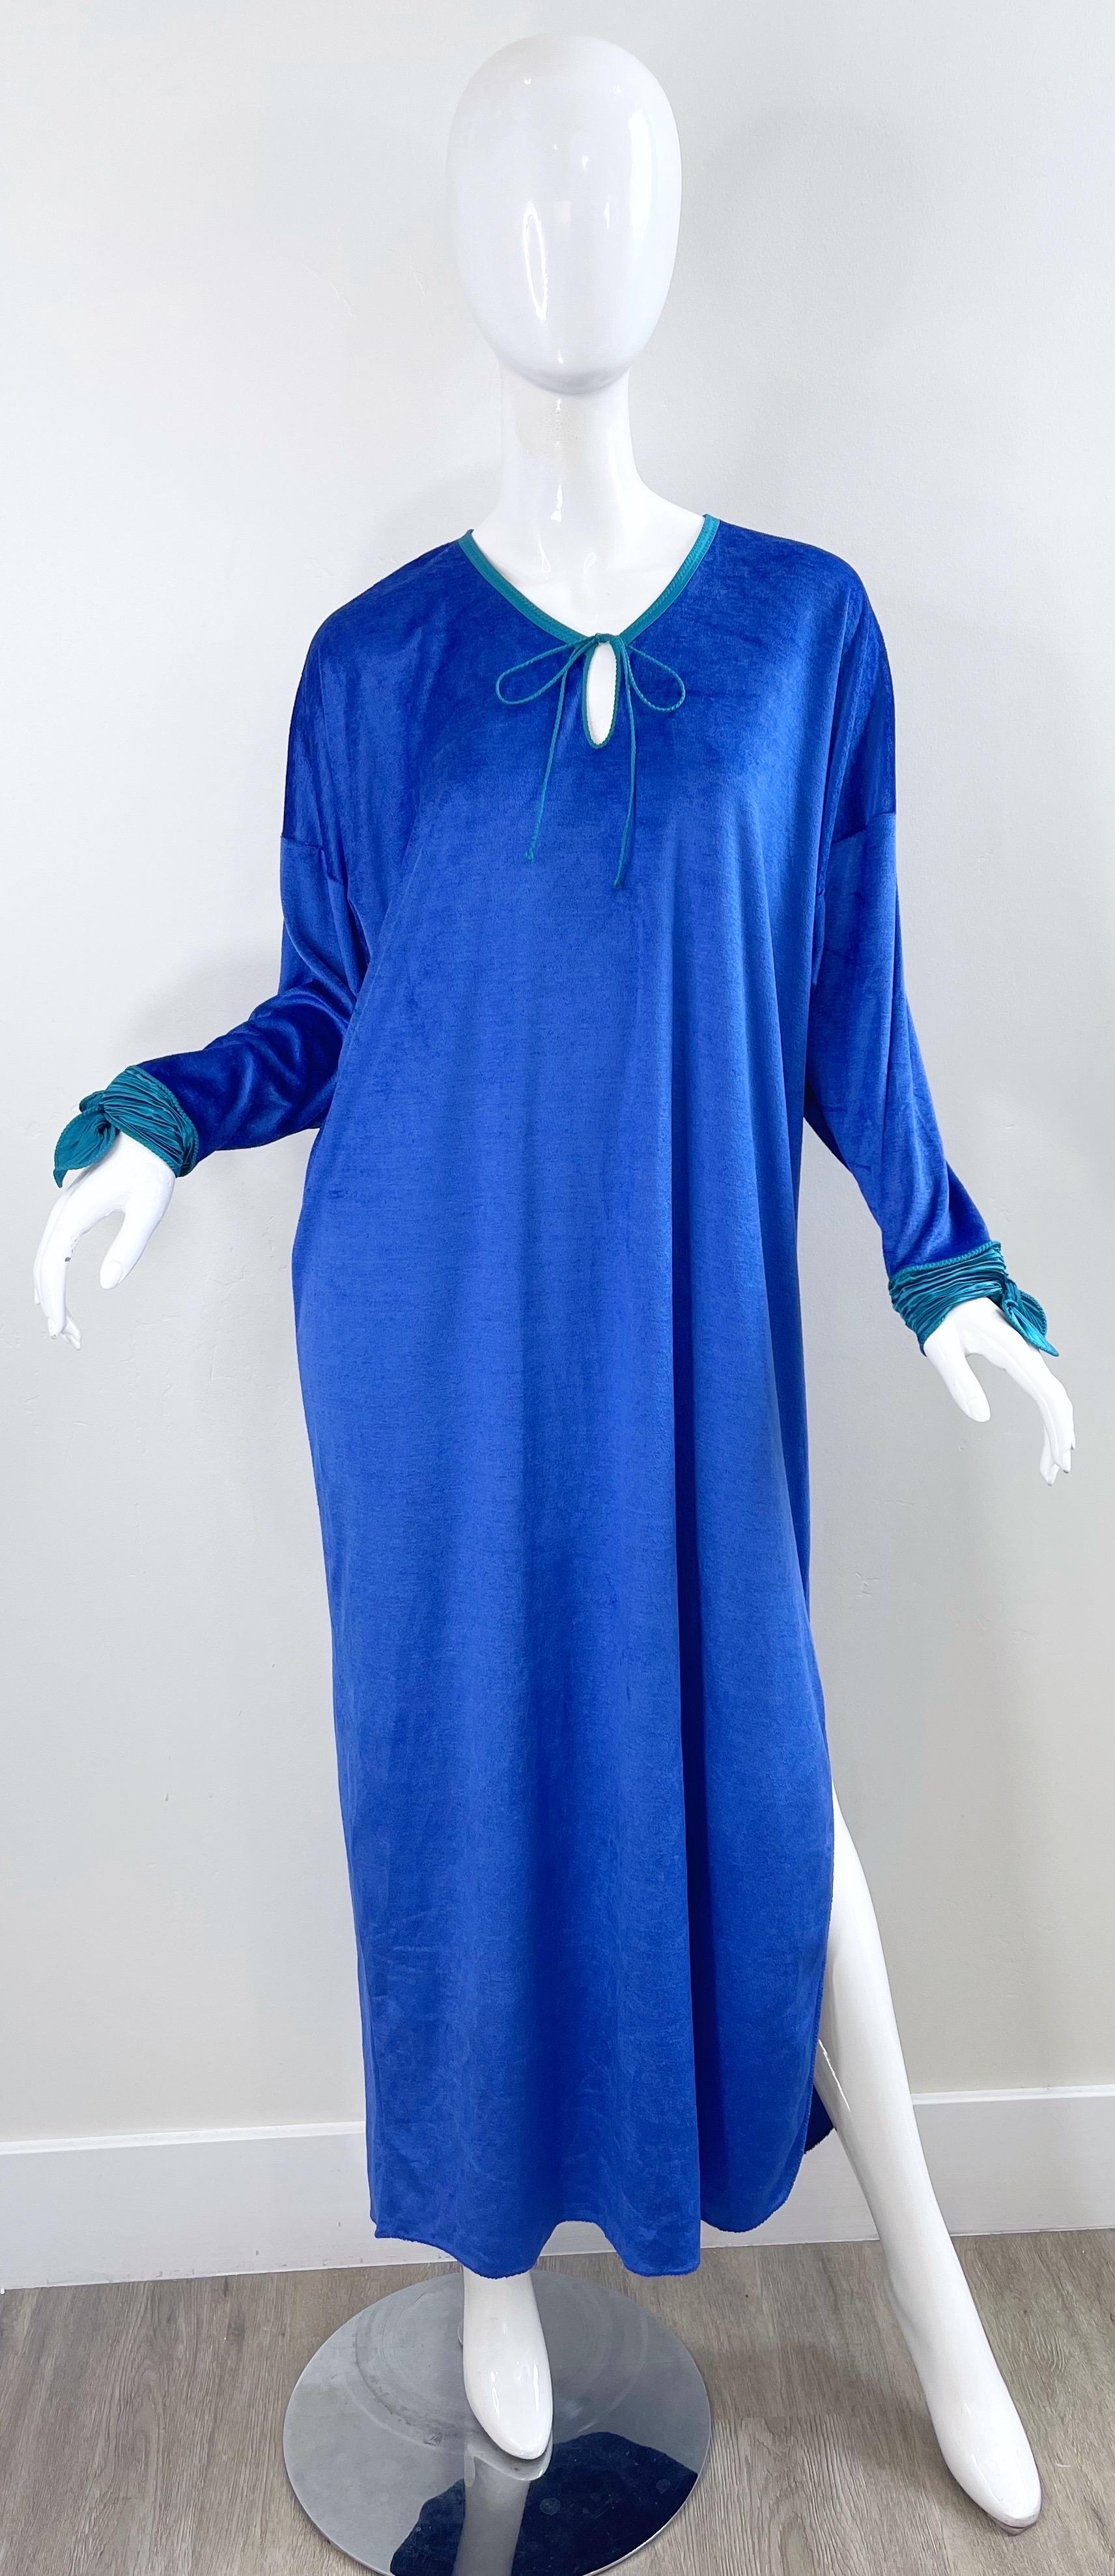 1980s Mary McFadden Royal Blue Teal Velour Vintage 80s Caftan Maxi Dress Kaftan For Sale 14